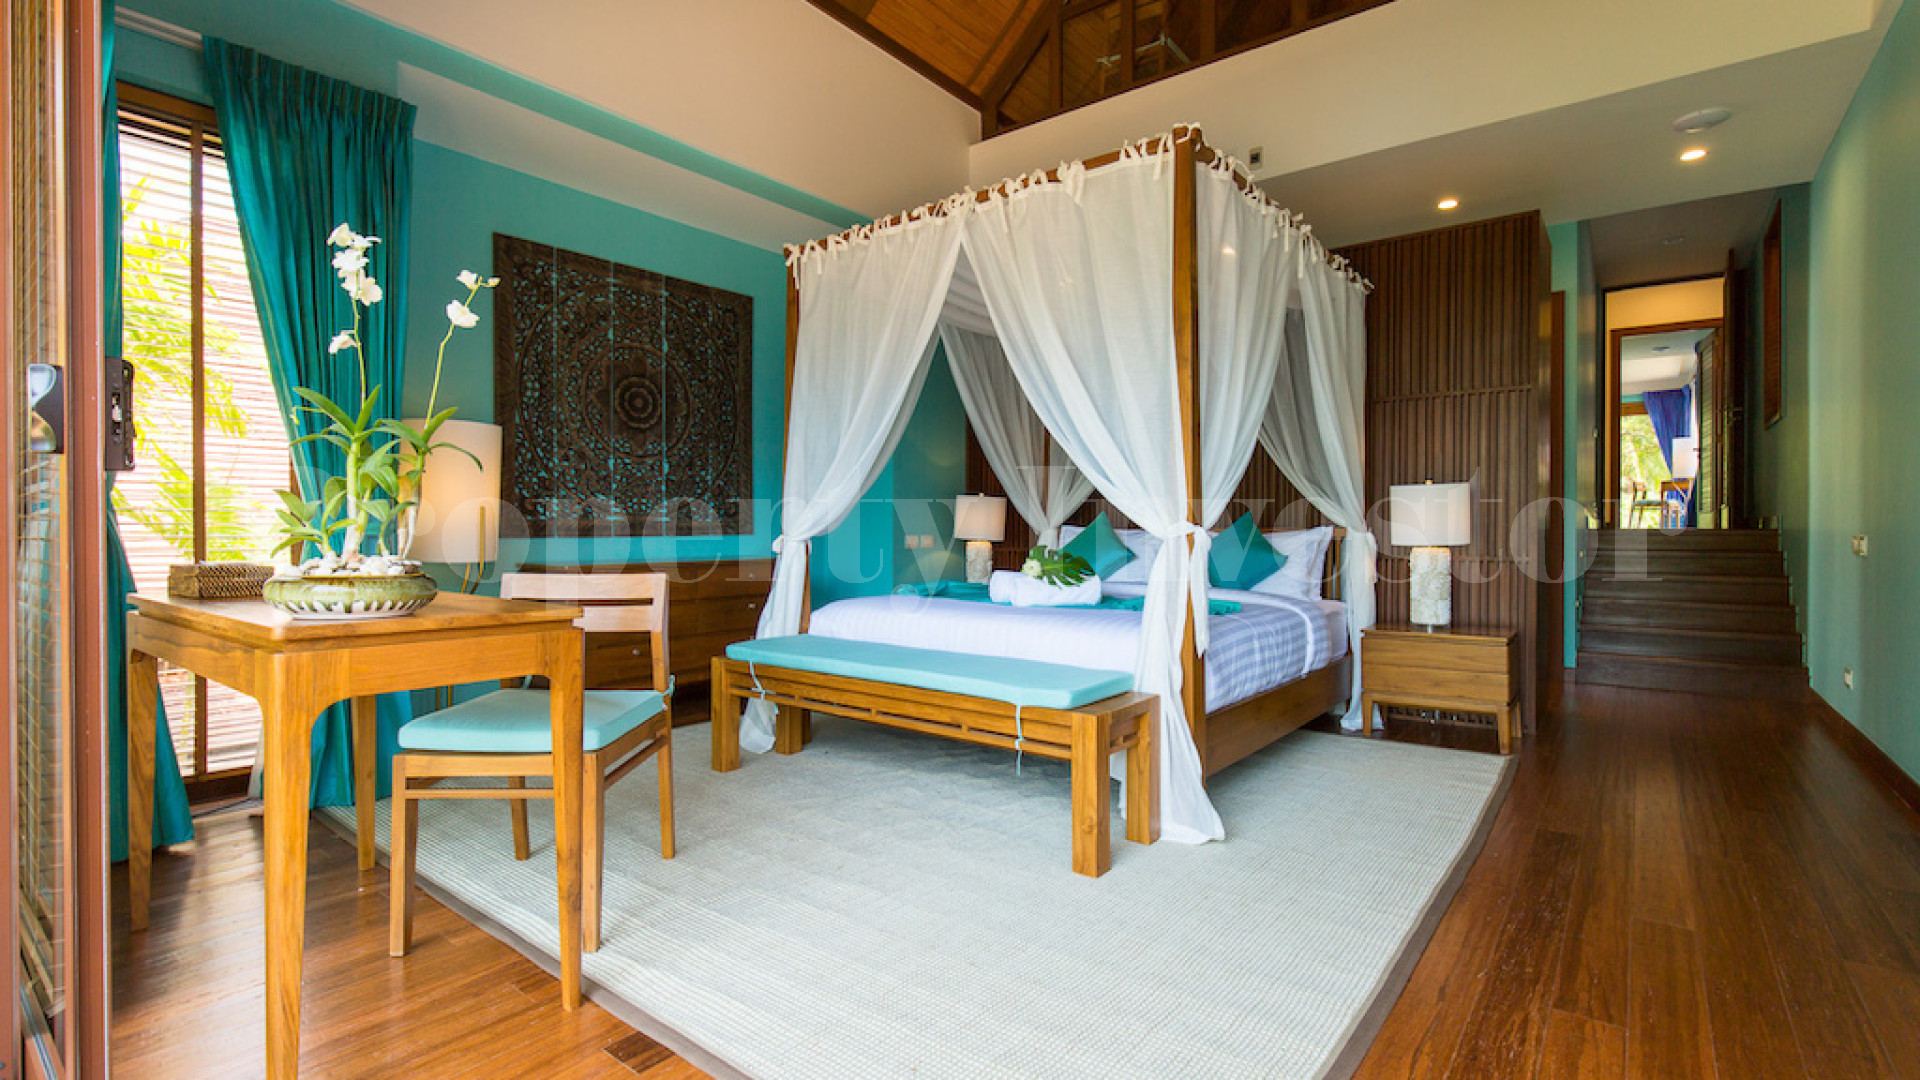 Продается роскошная тропическая вилла с 5 спальнями в тайском стиле на Самуи